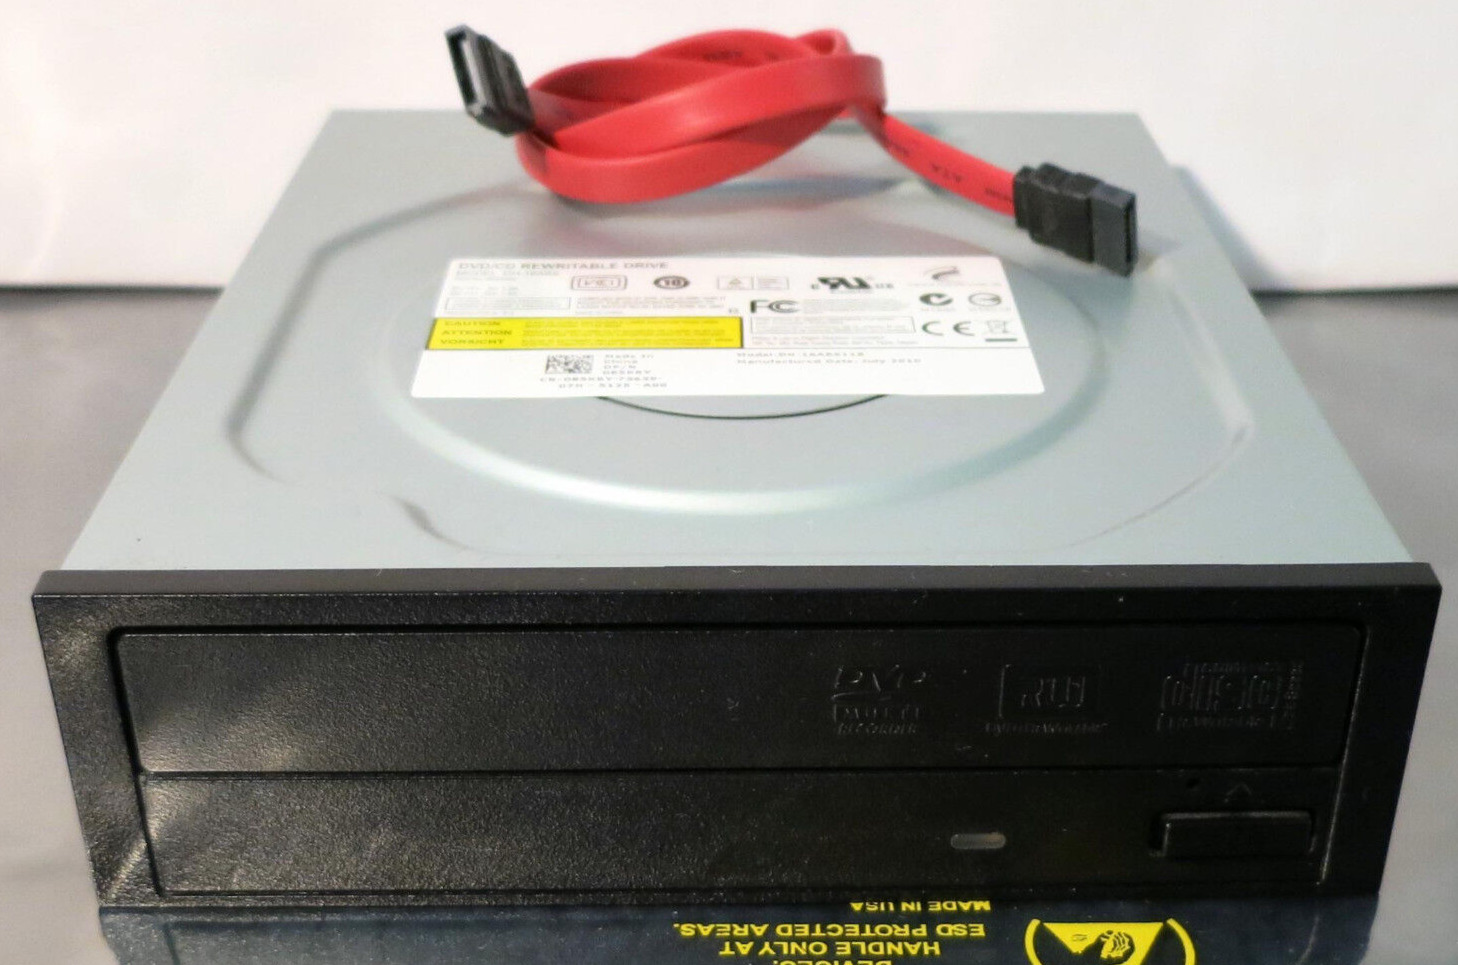 Philips Lite-ON DH-16ABS DVD/CD Rewritable Drive (Black) SATA DP/N: 085KRY